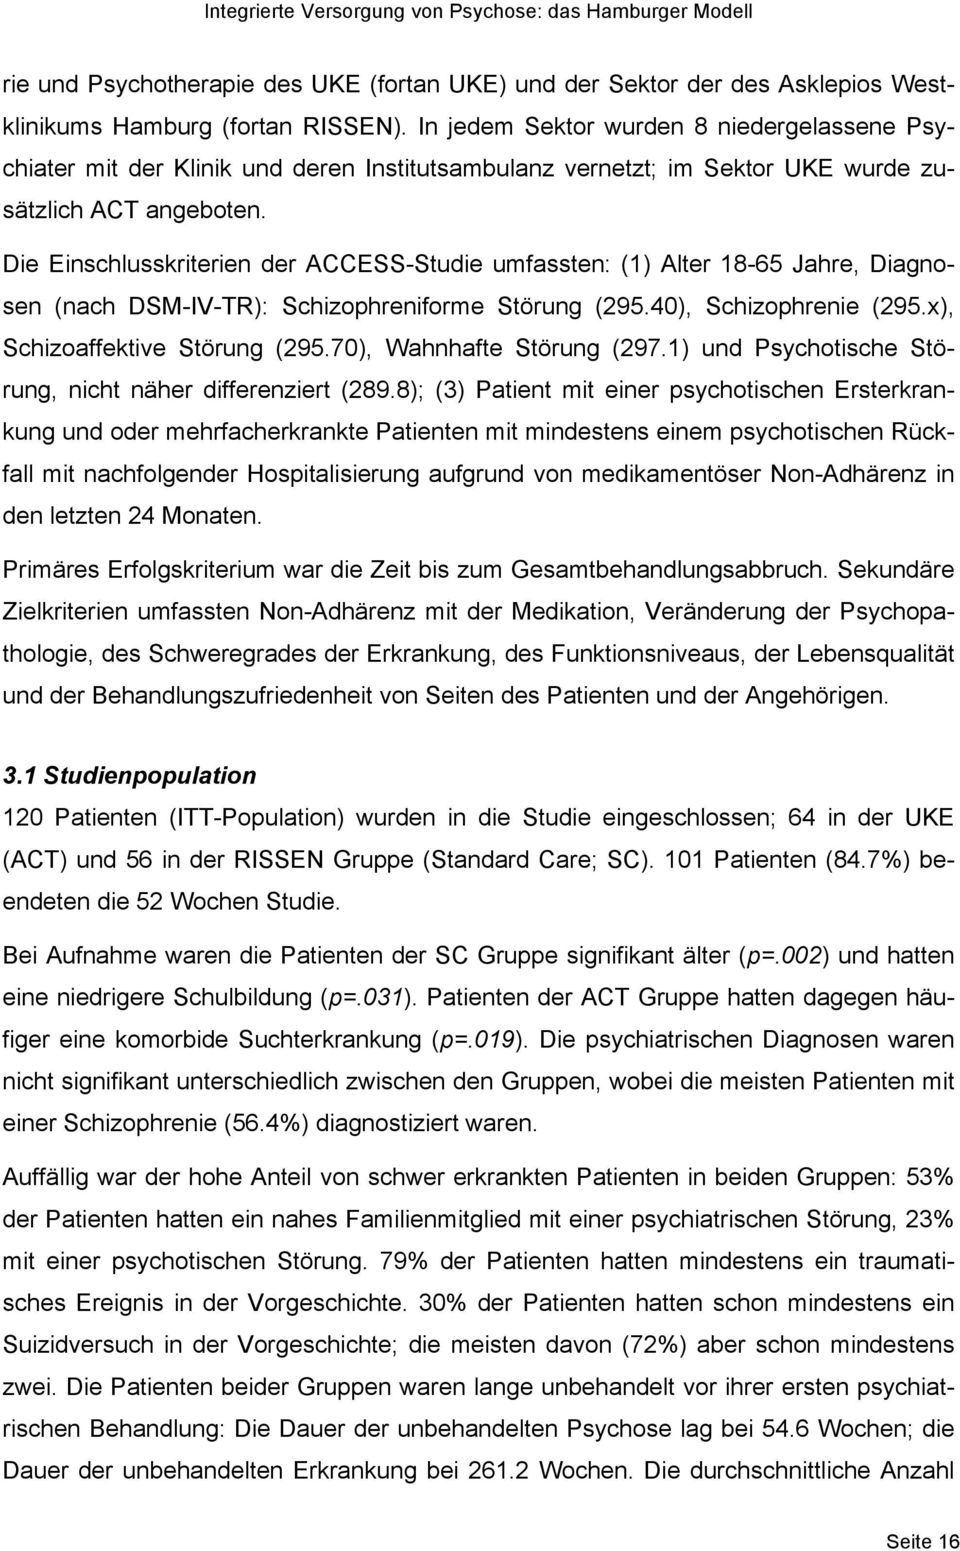 Die Einschlusskriterien der ACCESS-Studie umfassten: (1) Alter 18-65 Jahre, Diagnosen (nach DSM-IV-TR): Schizophreniforme Störung (295.40), Schizophrenie (295.x), Schizoaffektive Störung (295.